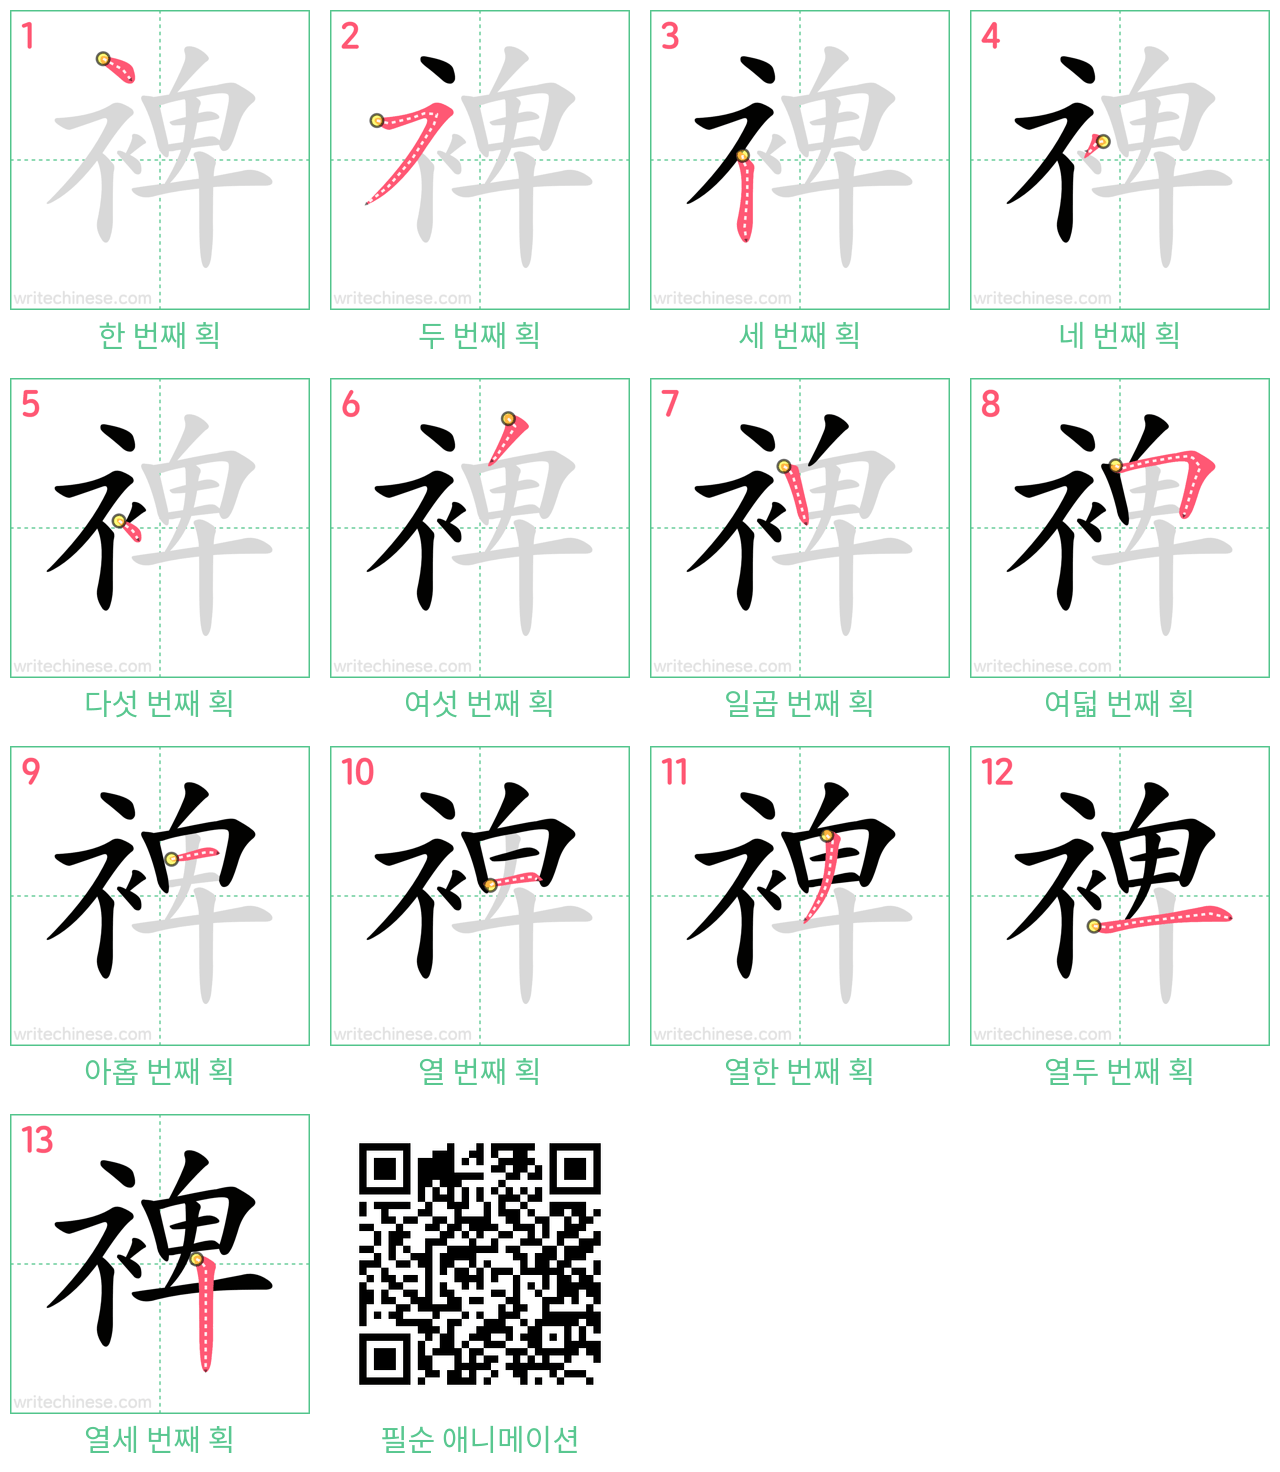 裨 step-by-step stroke order diagrams